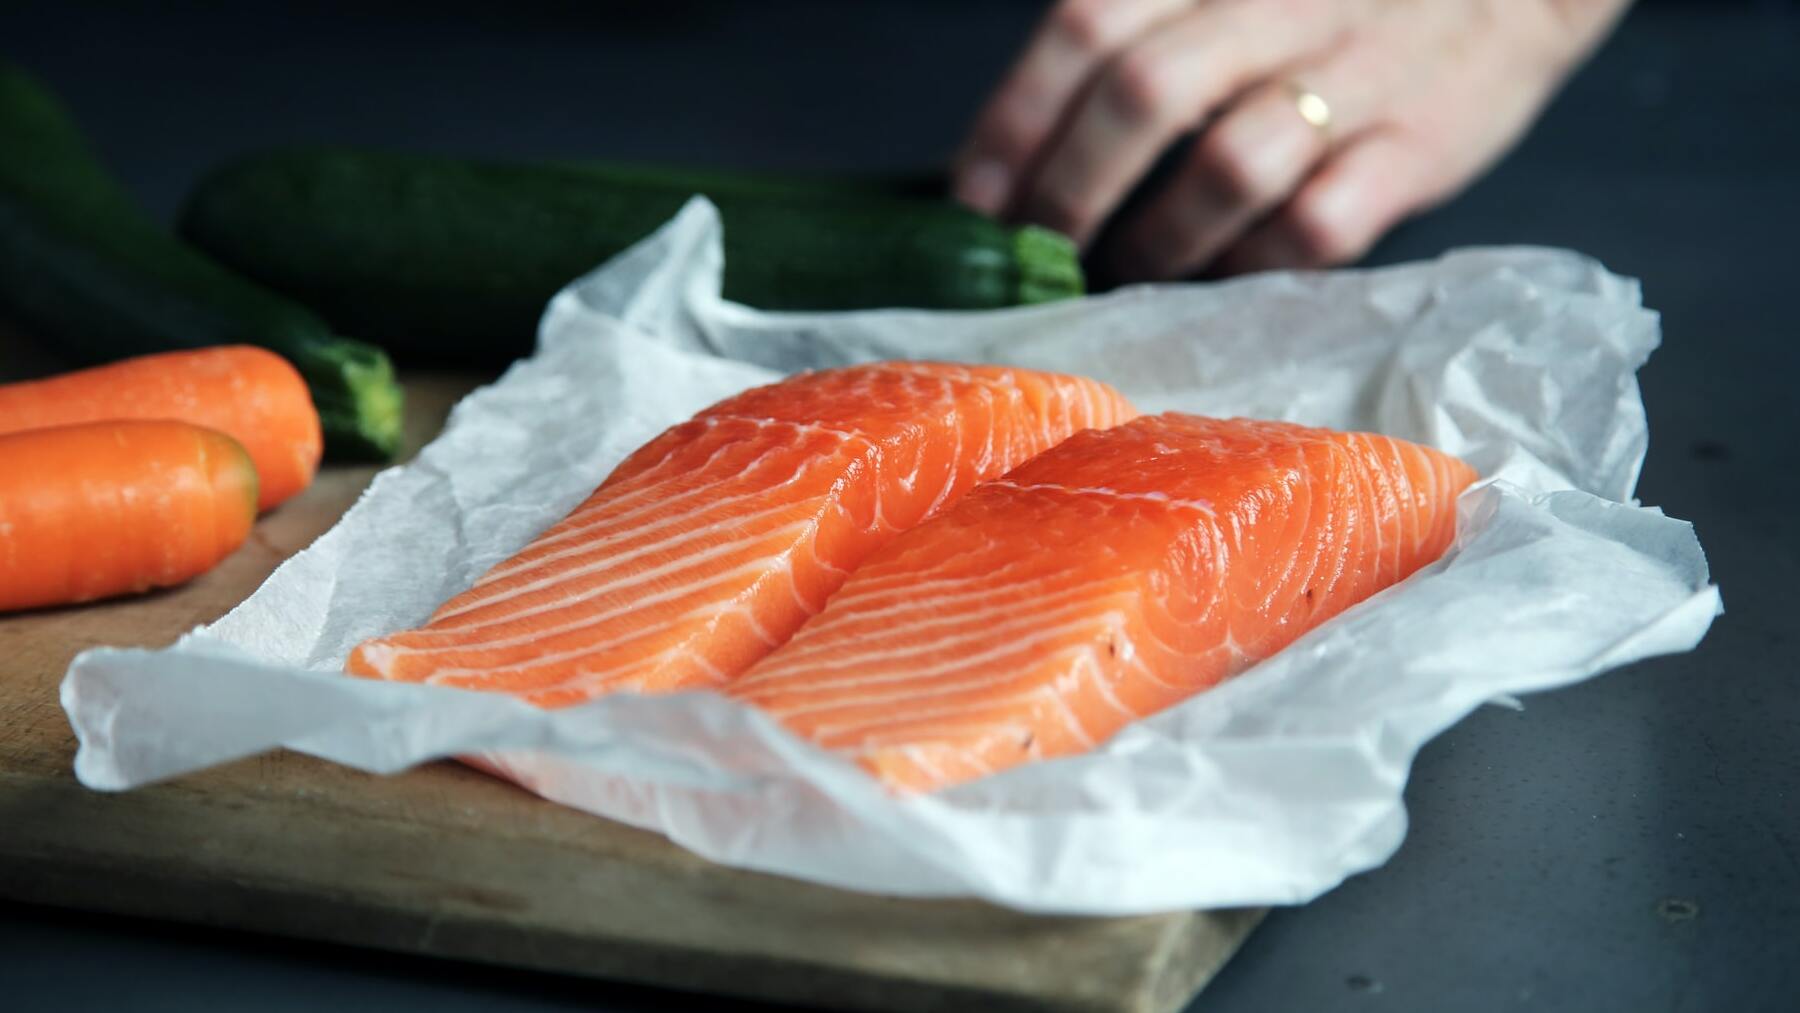 Los 5 errores más comunes al cocinar pescado, y cómo evitarlos